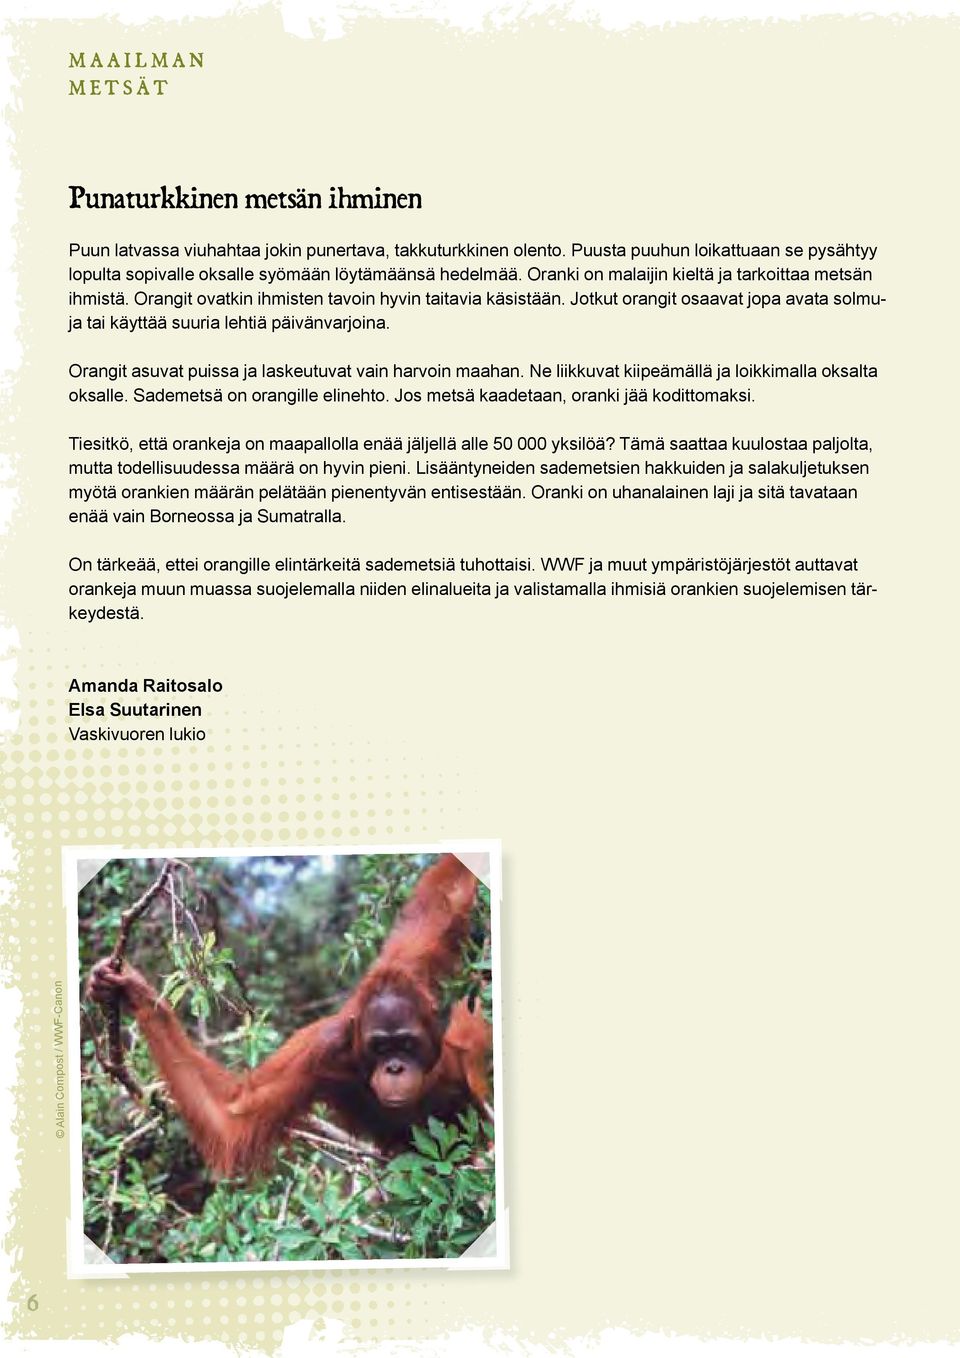 Orangit ovatkin ihmisten tavoin hyvin taitavia käsistään. Jotkut orangit osaavat jopa avata solmuja tai käyttää suuria lehtiä päivänvarjoina. Orangit asuvat puissa ja laskeutuvat vain harvoin maahan.